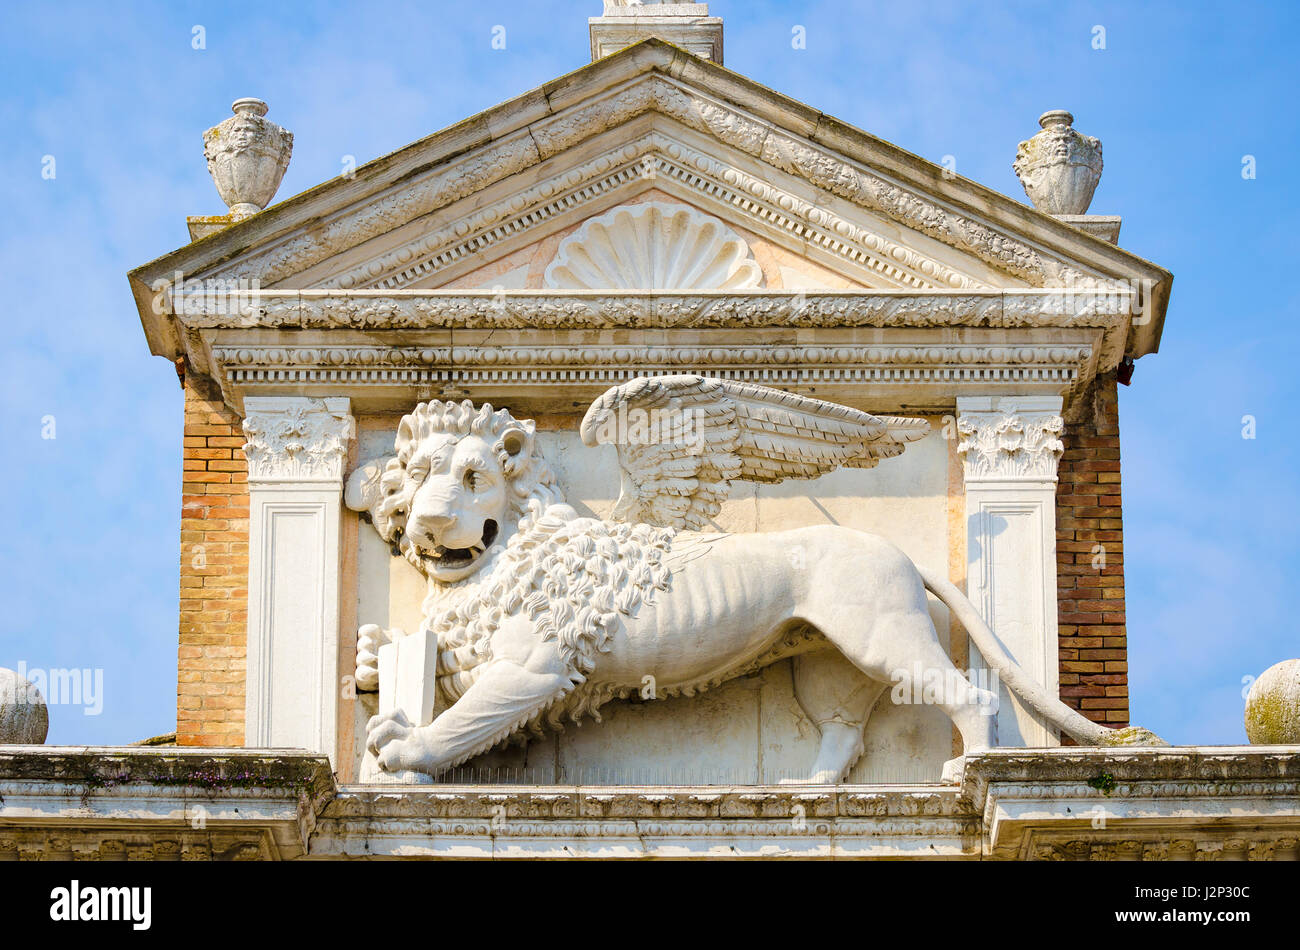 El león de San Marcos, el símbolo histórico de la República Veneciana, de pie en el puerto Magna en el complejo Arsenal de Venecia, Italia Foto de stock